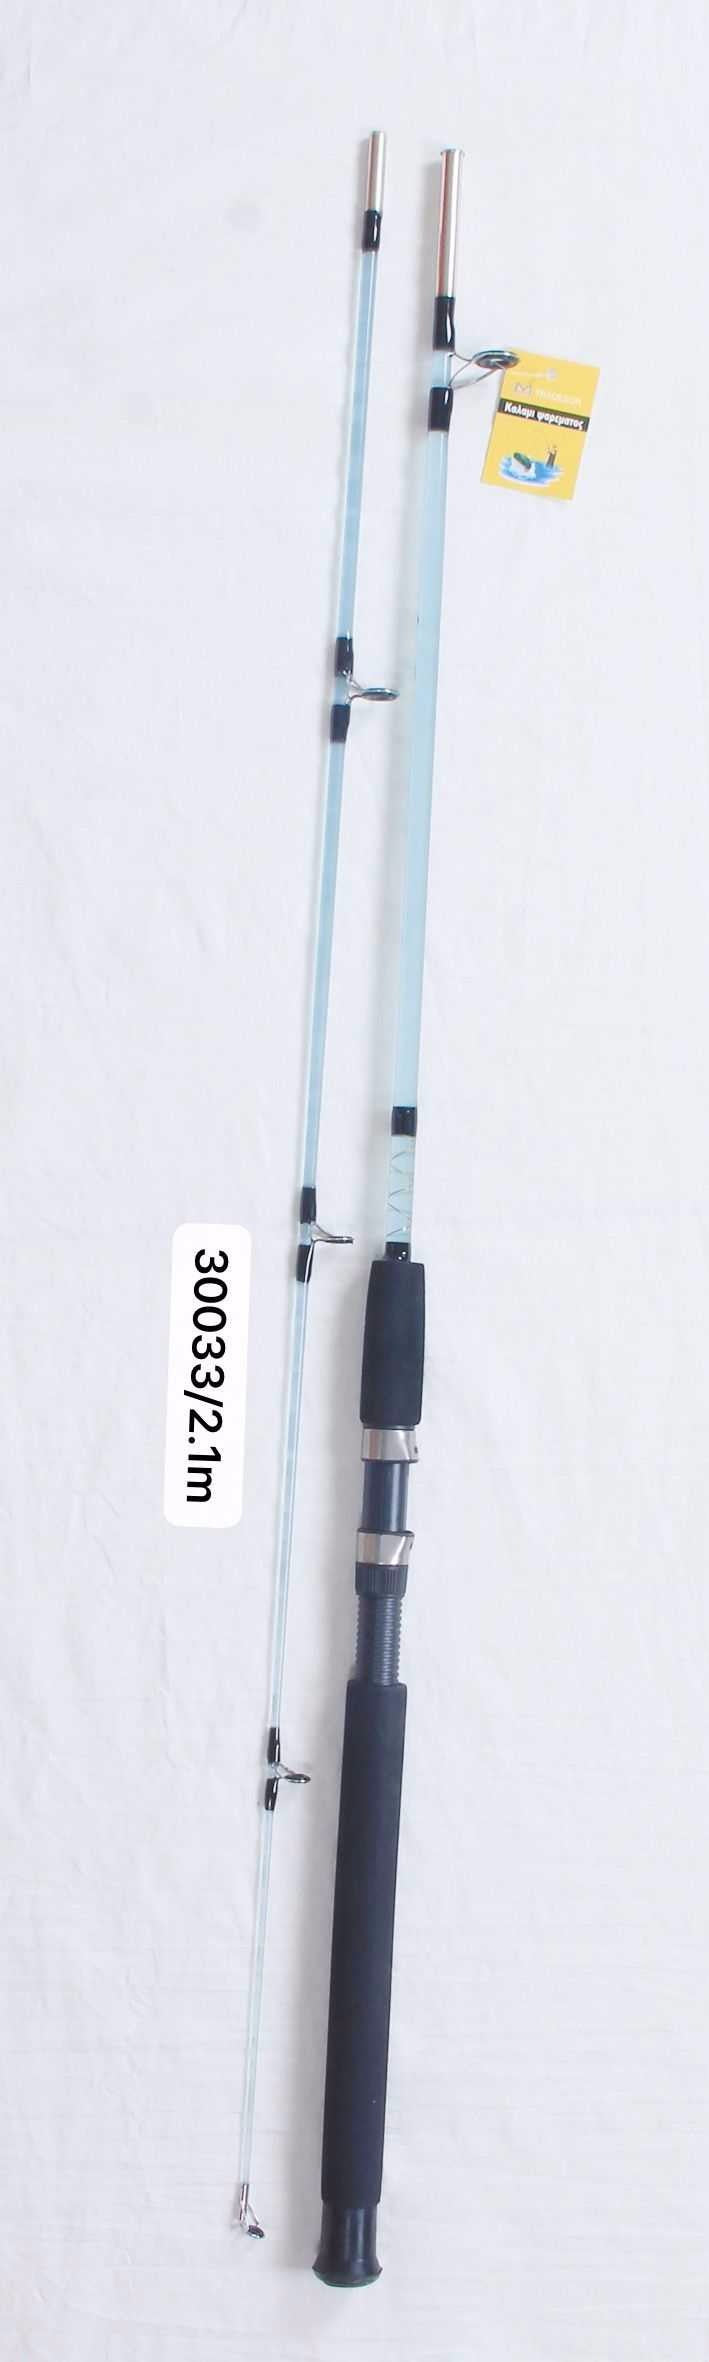 Fishing rod - 2.1m - 30033